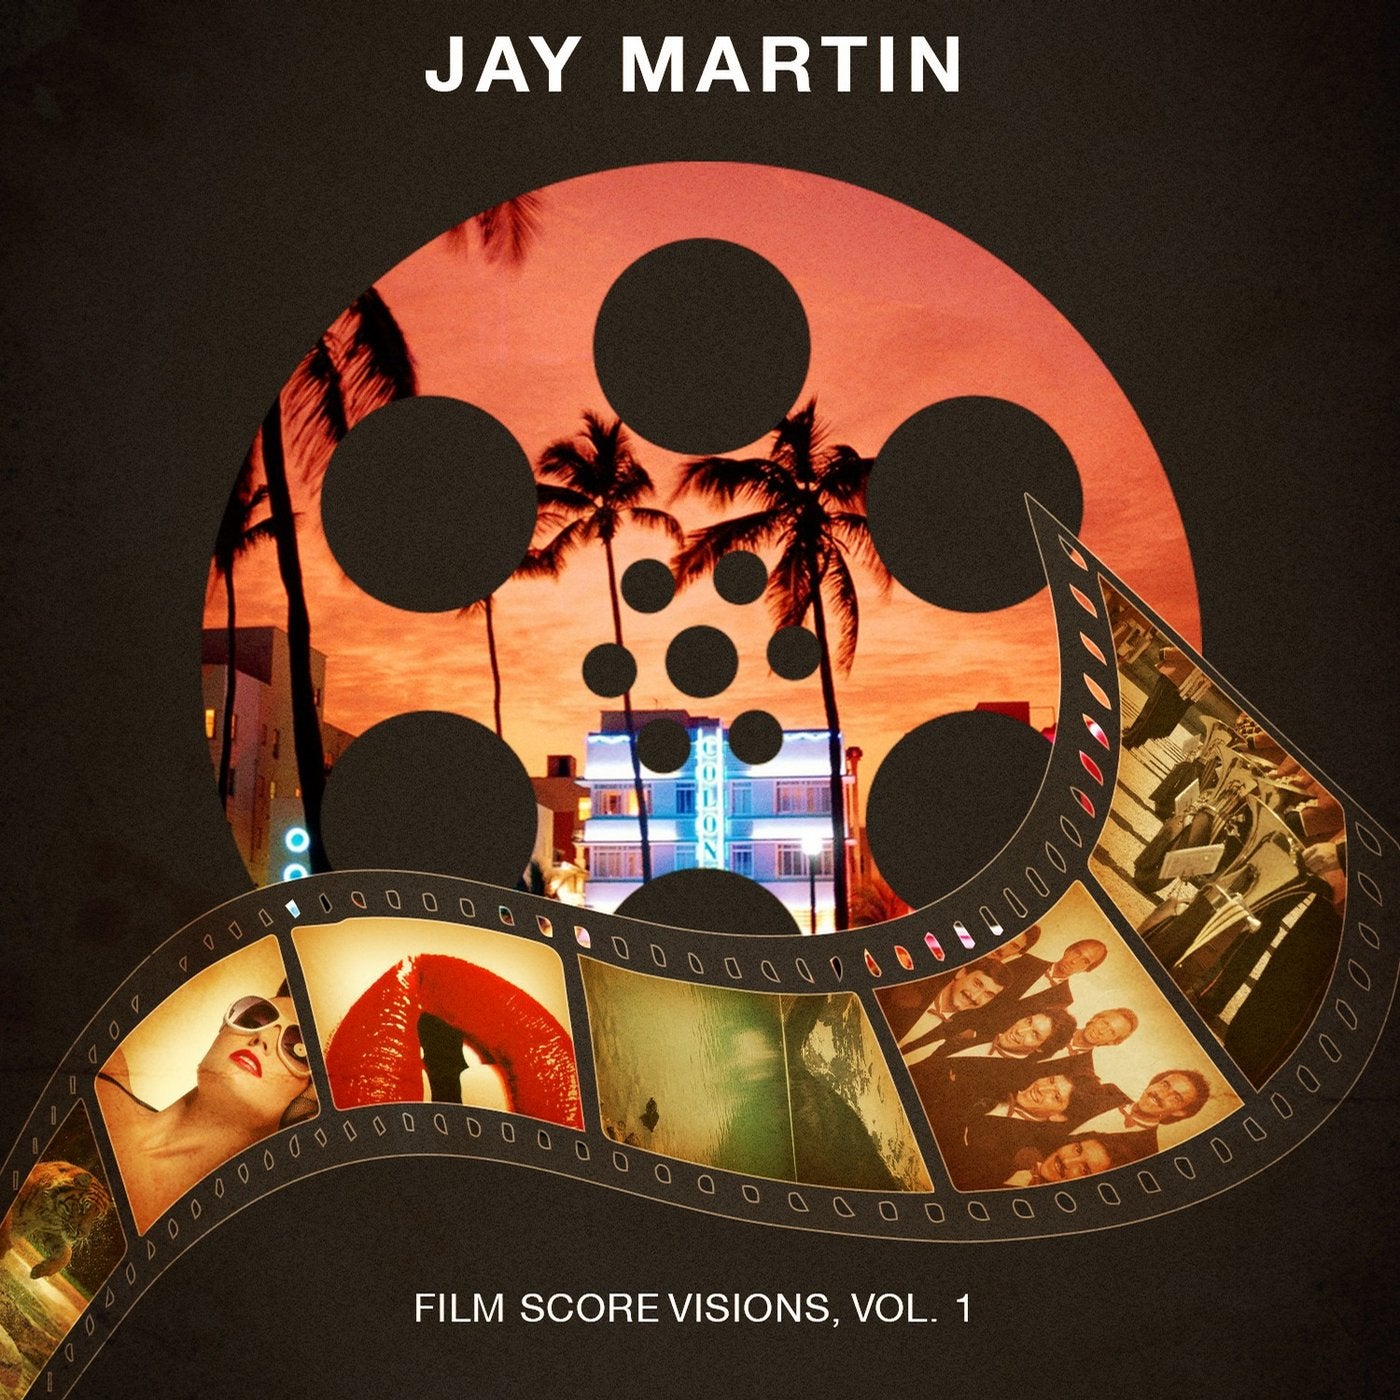 Film Score Visions, Vol. 1